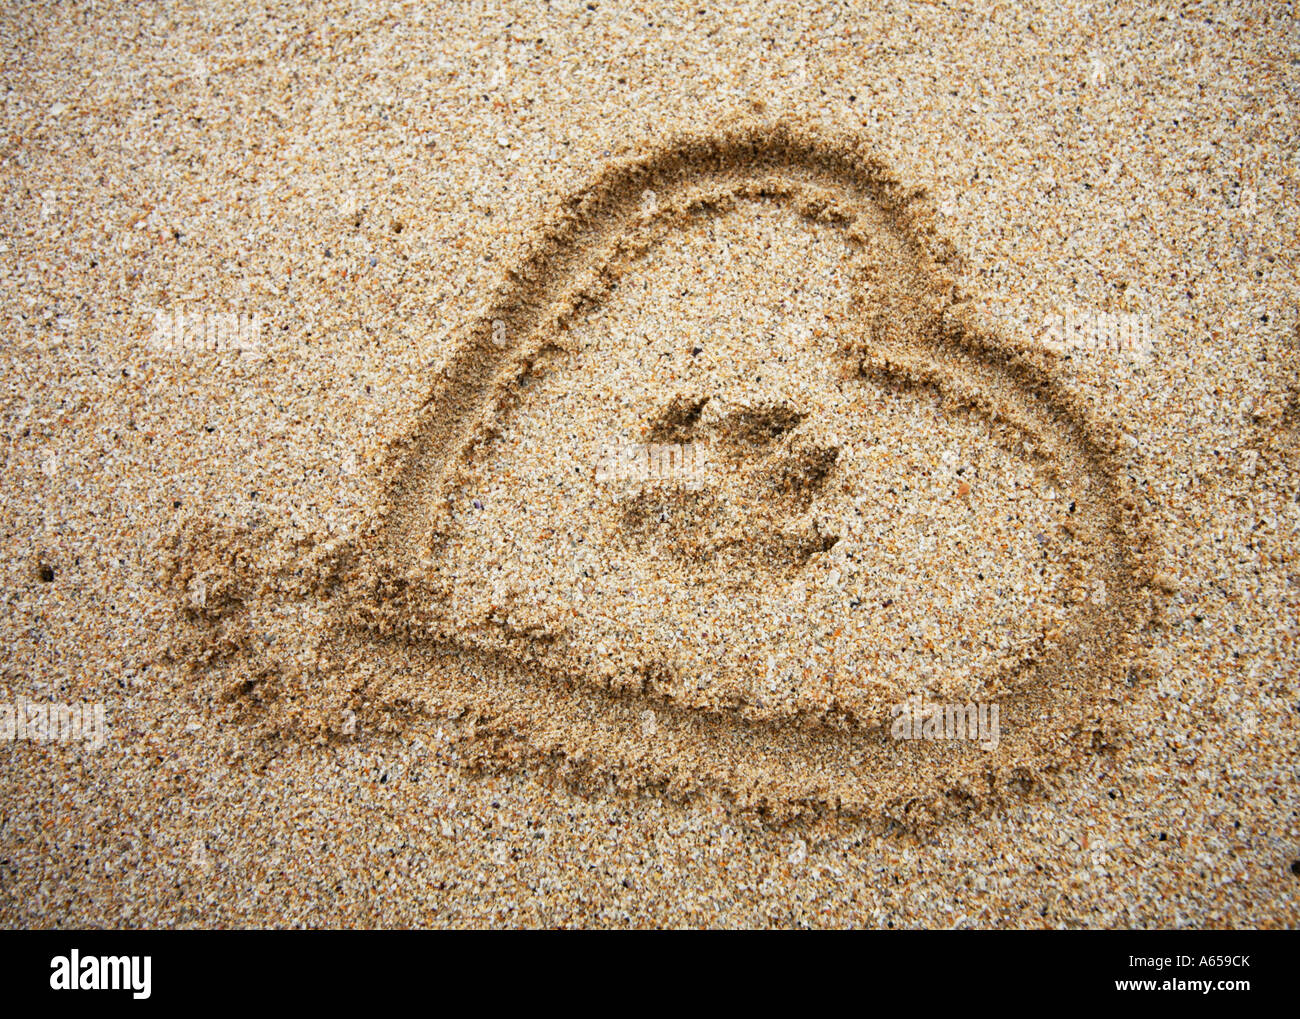 Dog Paw Stampa con cuore in sabbia Foto Stock